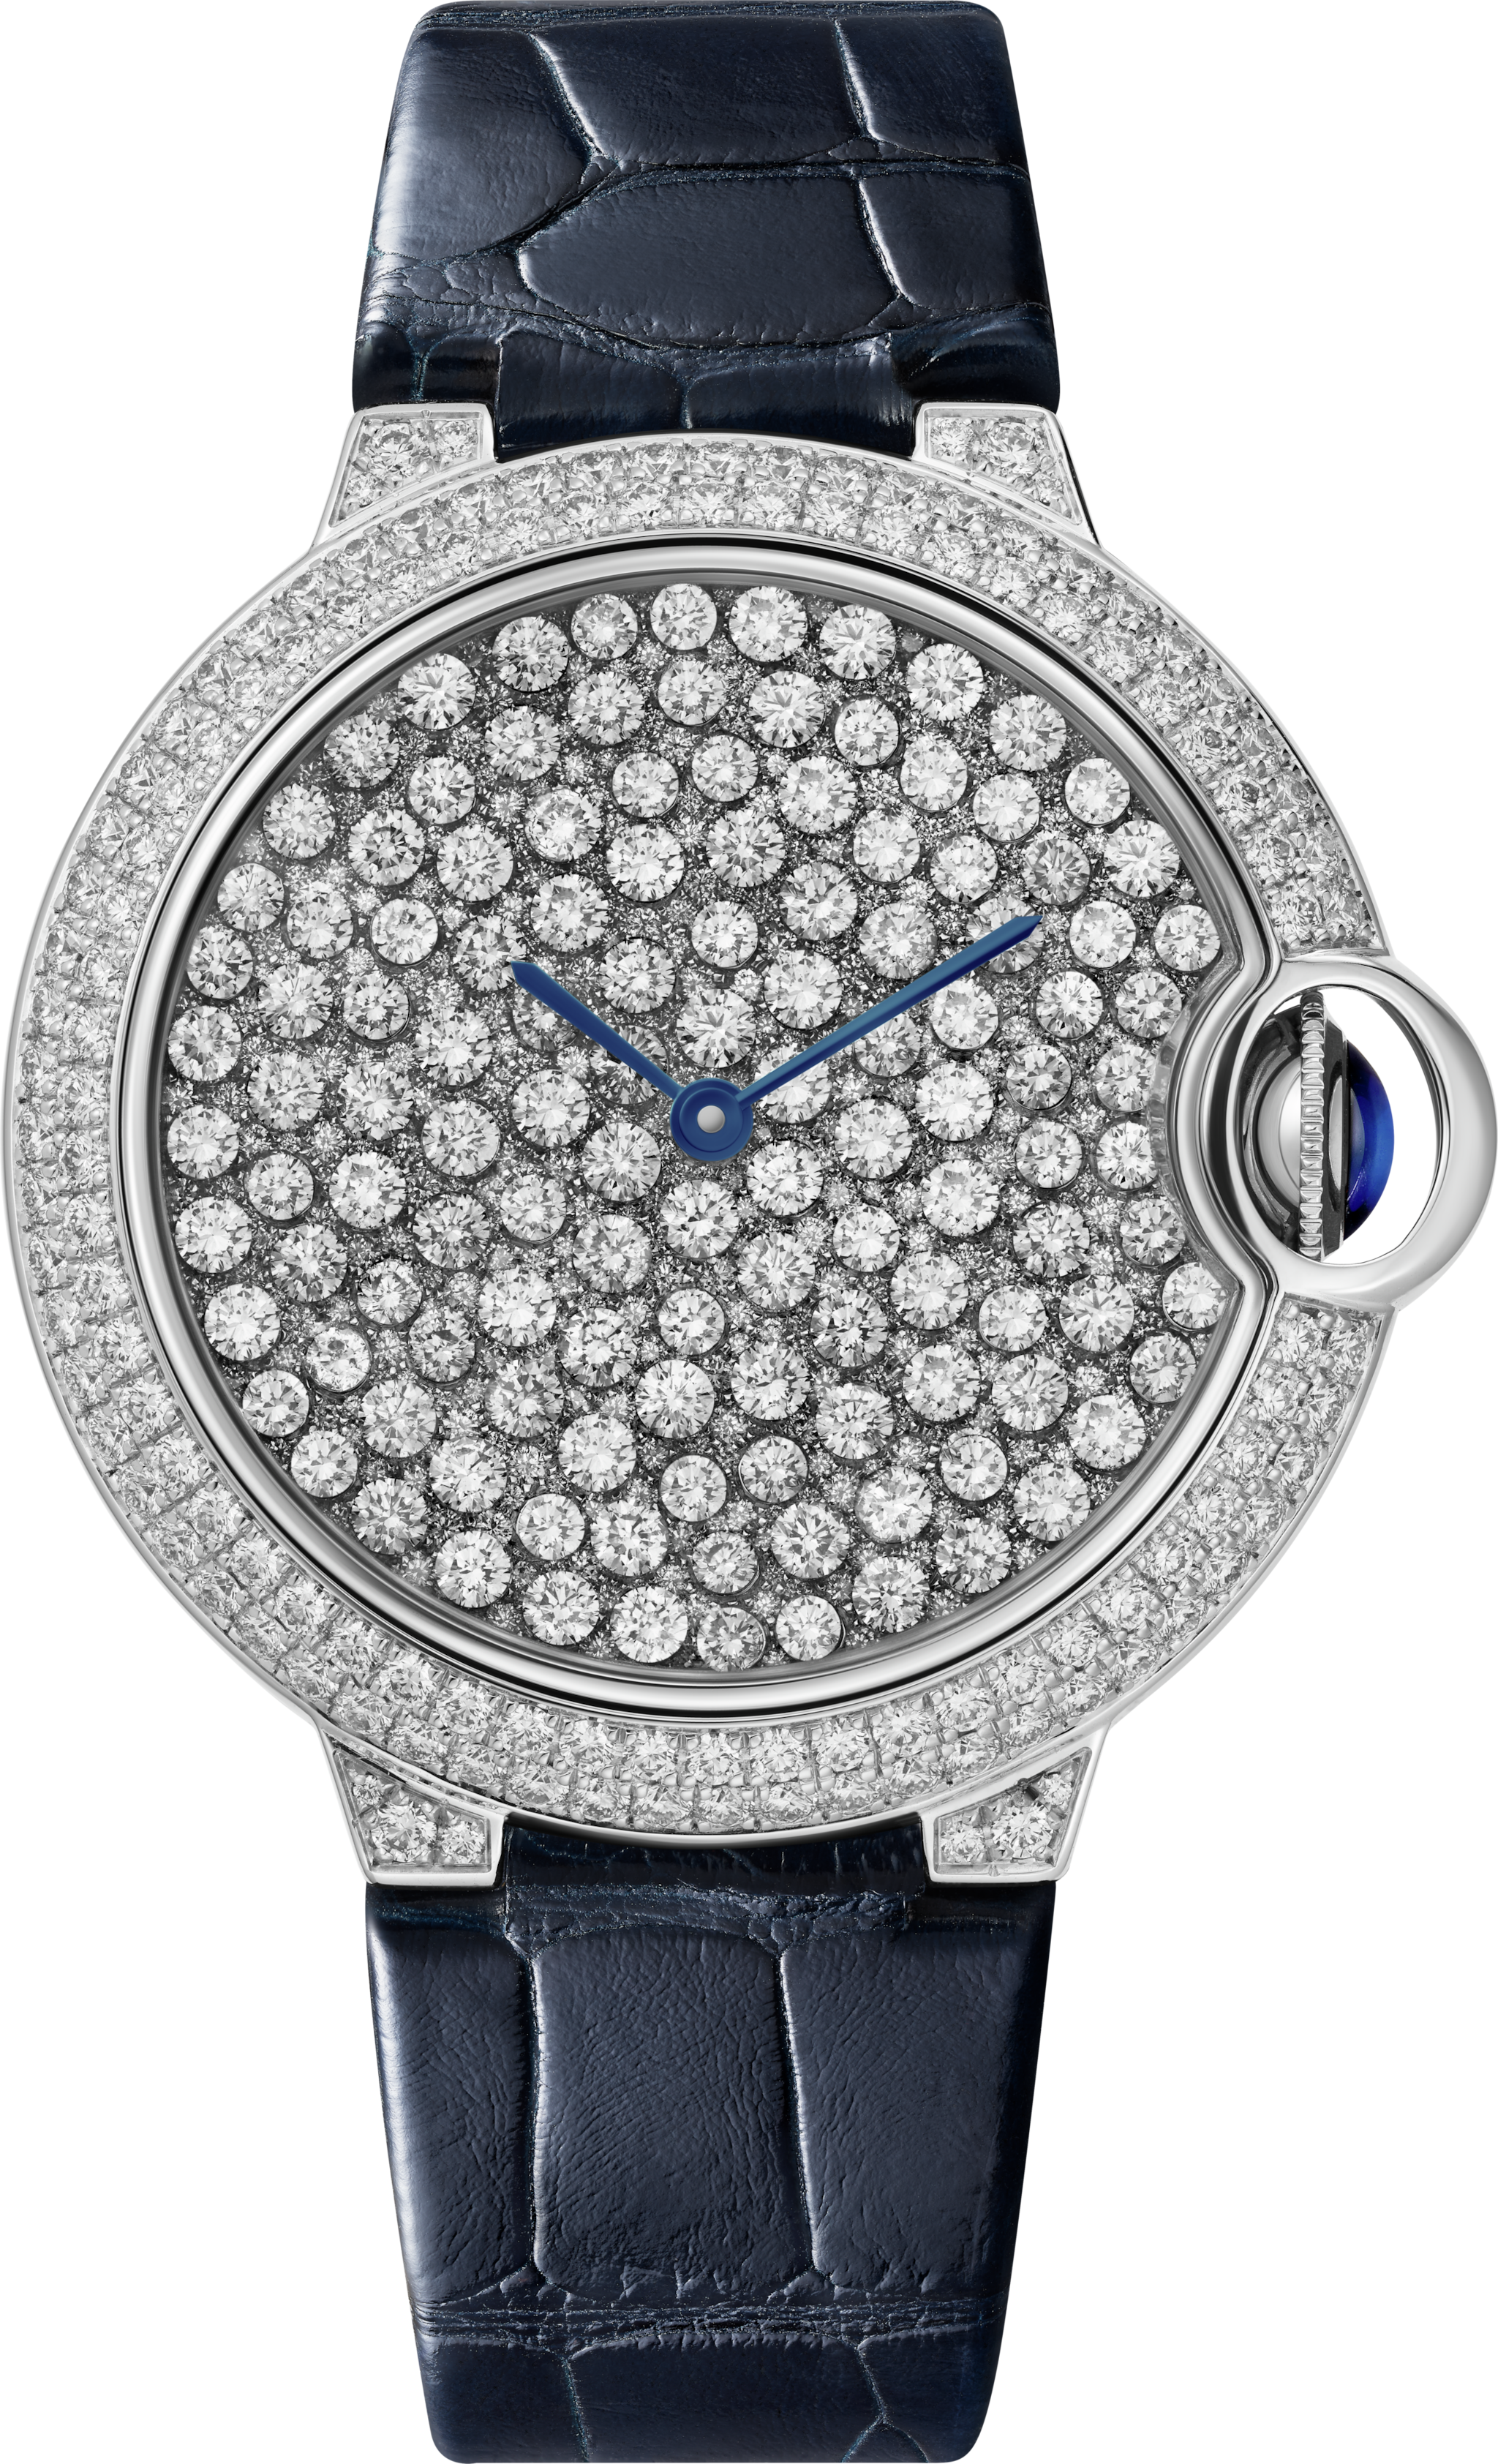 Reloj Ballon Bleu de Cartier37 mm, movimiento mecánico automático, oro blanco, diamantes, correa de piel de aligátor